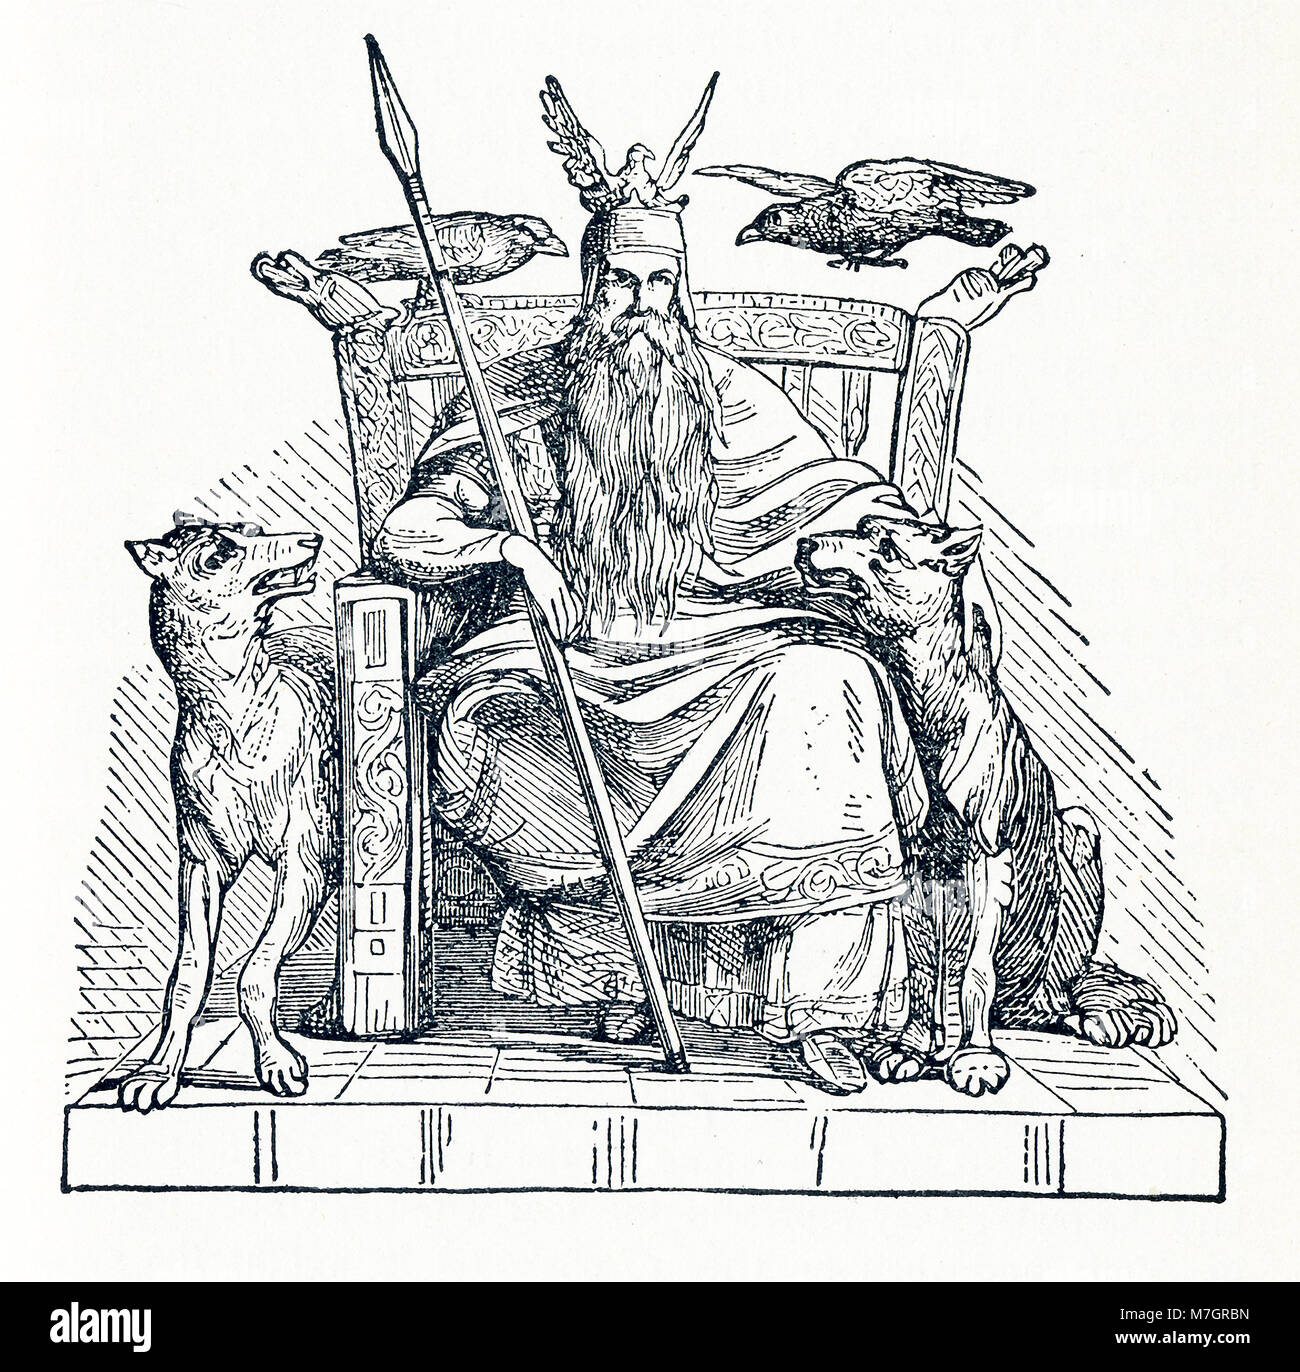 Nach der nordischen Mythologie, Odin war einer der wichtigsten Götter und die Herrscher von Asgard (das Land oder die Hauptstadt der nordischen Götter). Hier Odin sitzt auf seinem Thron. Auf seiner Schulter sind die beiden Raben Hugin (auch Huginn- und Bedeutung 'Gedanken') und Munin (auch Muninn und Bedeutung 'memory'), die mit ihm verbunden sind. Zu seiner Rechten und Linken unten sind die zwei Wölfe, Geri und Freki (beide mit der Bedeutung "gierig" oder ravenous'), das auch gesagt wurden, ihn zu begleiten. Stockfoto